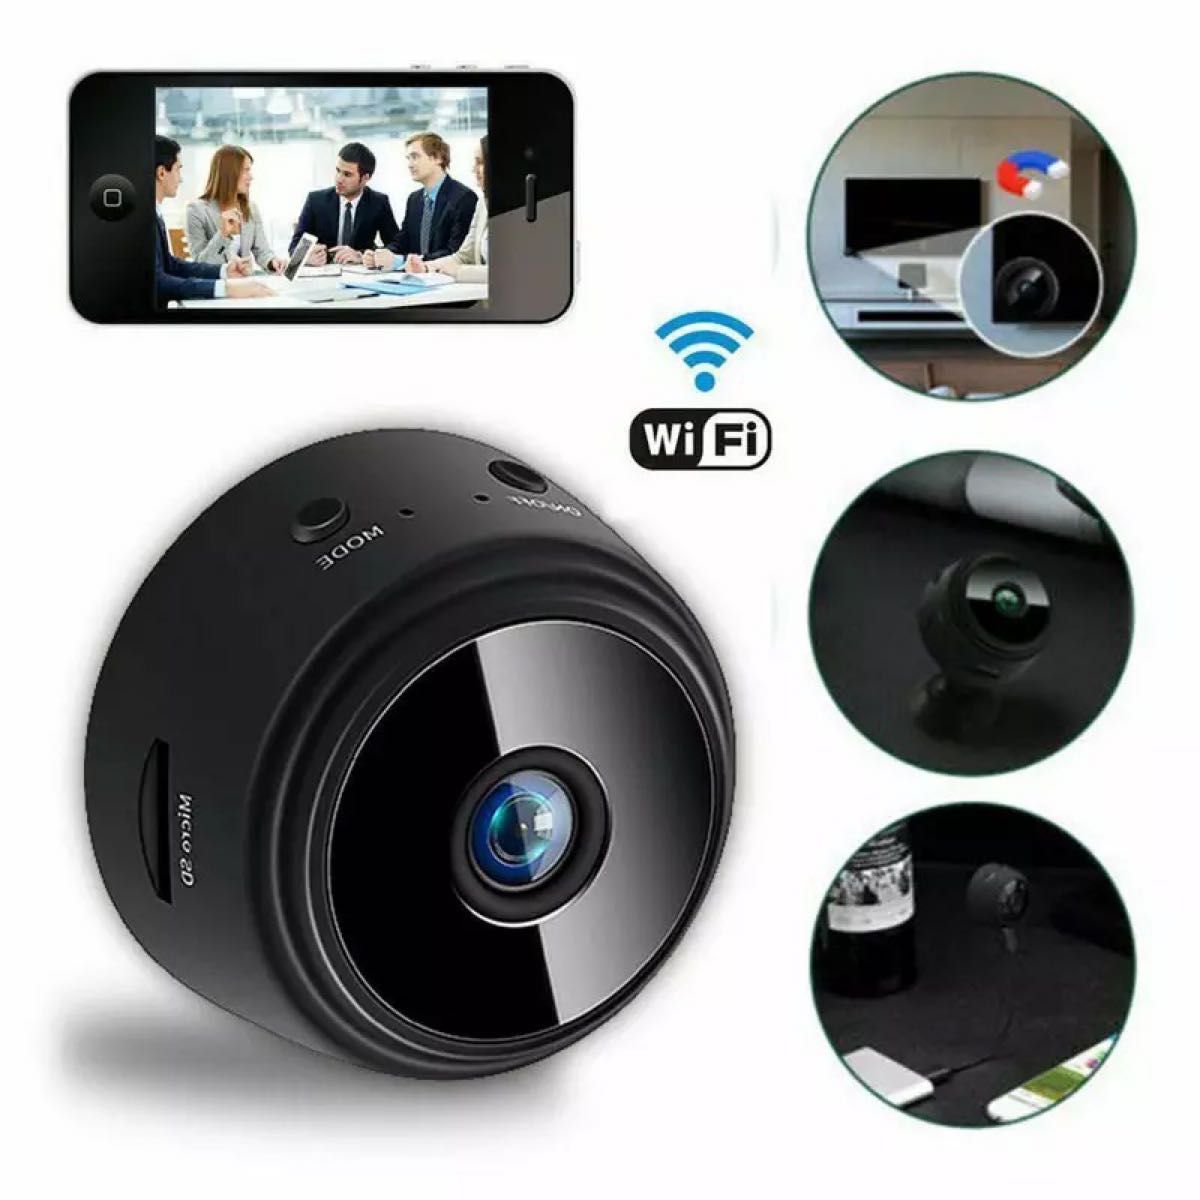 【2個セット】Wifi A9 超小型 ポータブル ミニIP防犯カメラ【送料無料】